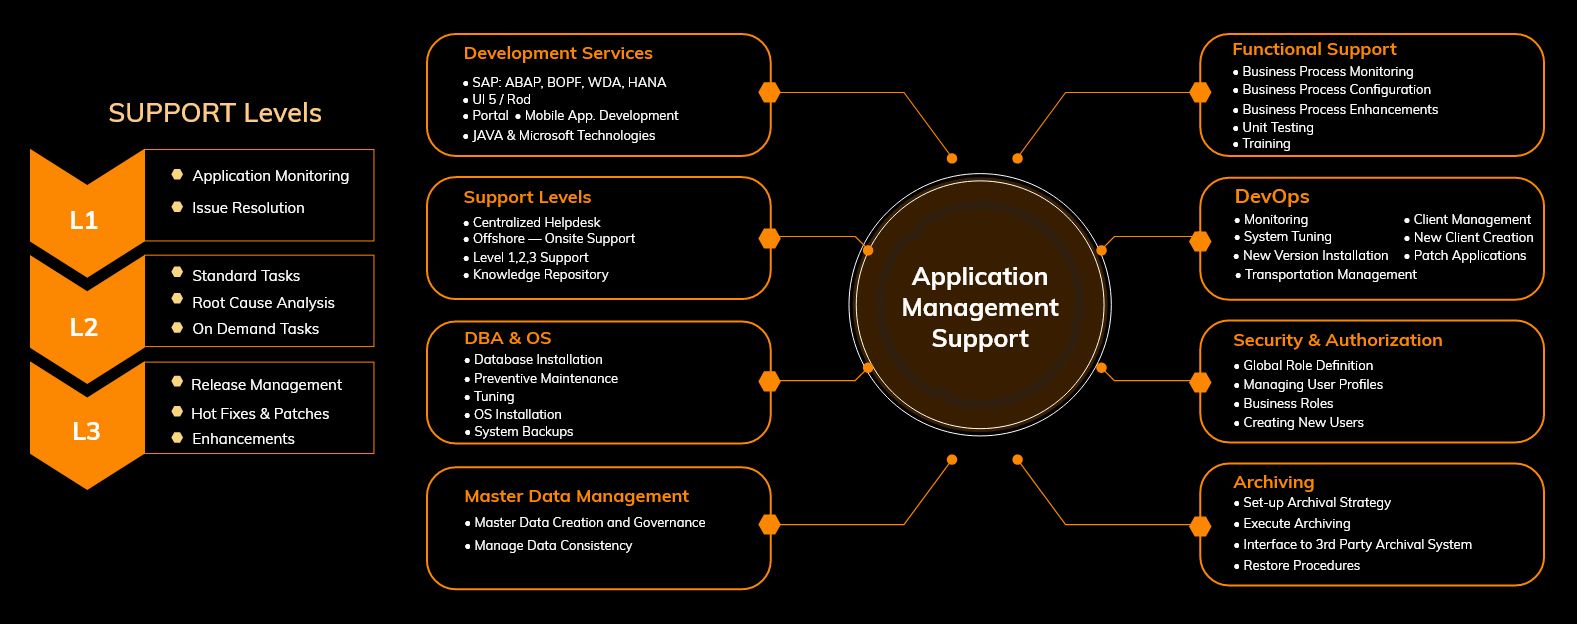 Application Services - Management